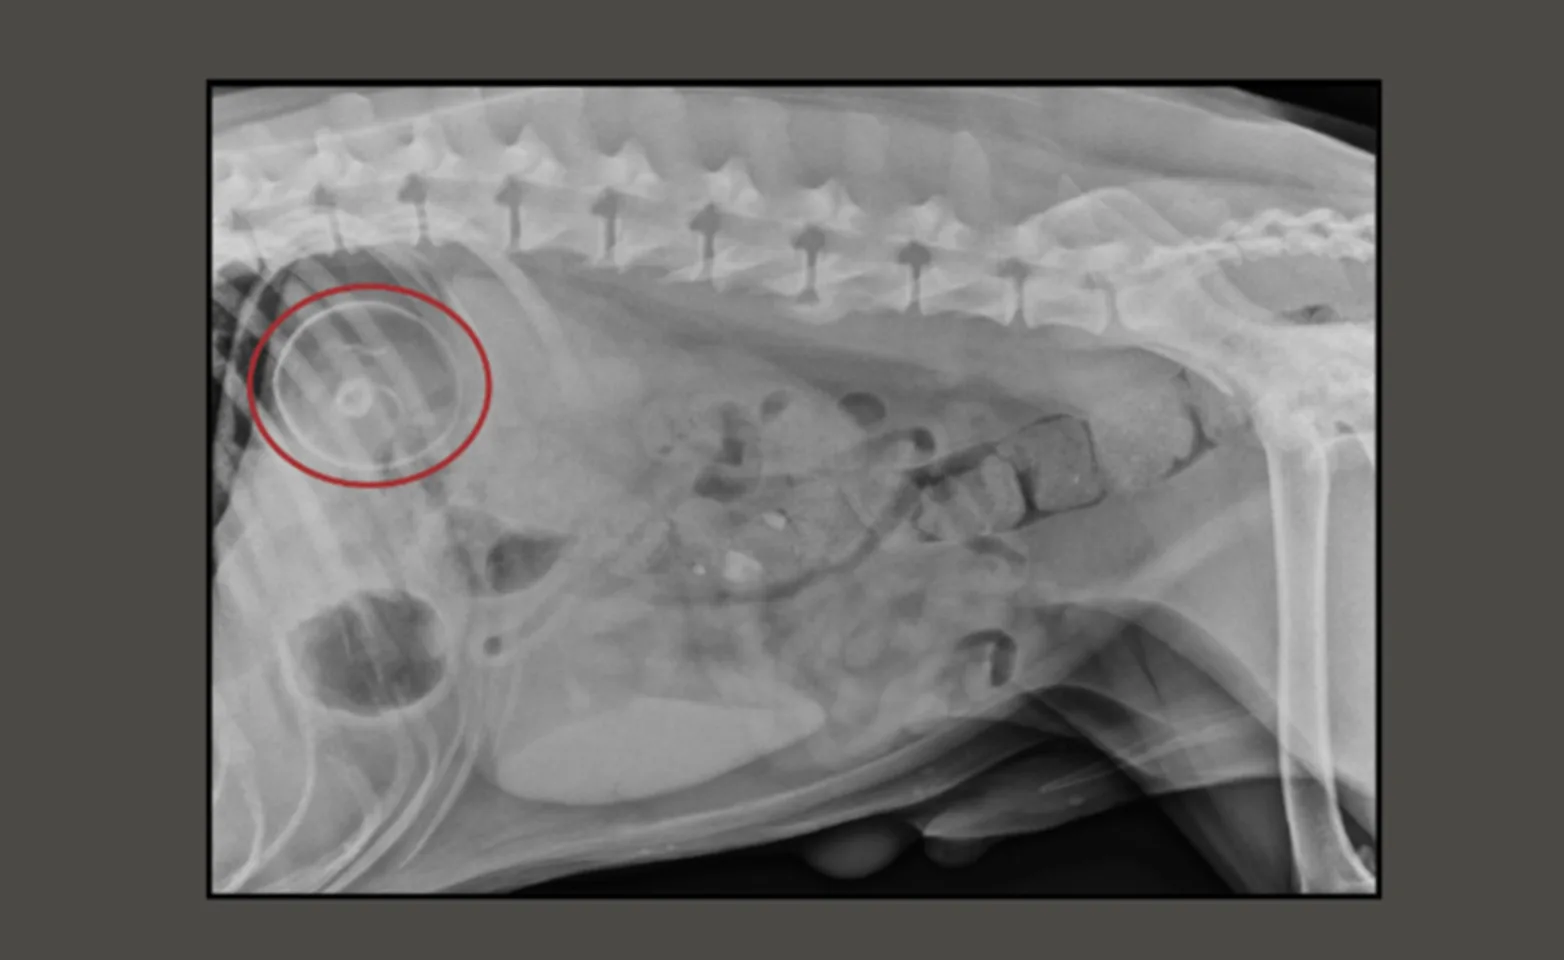 A radiograph of a dog's abdomen